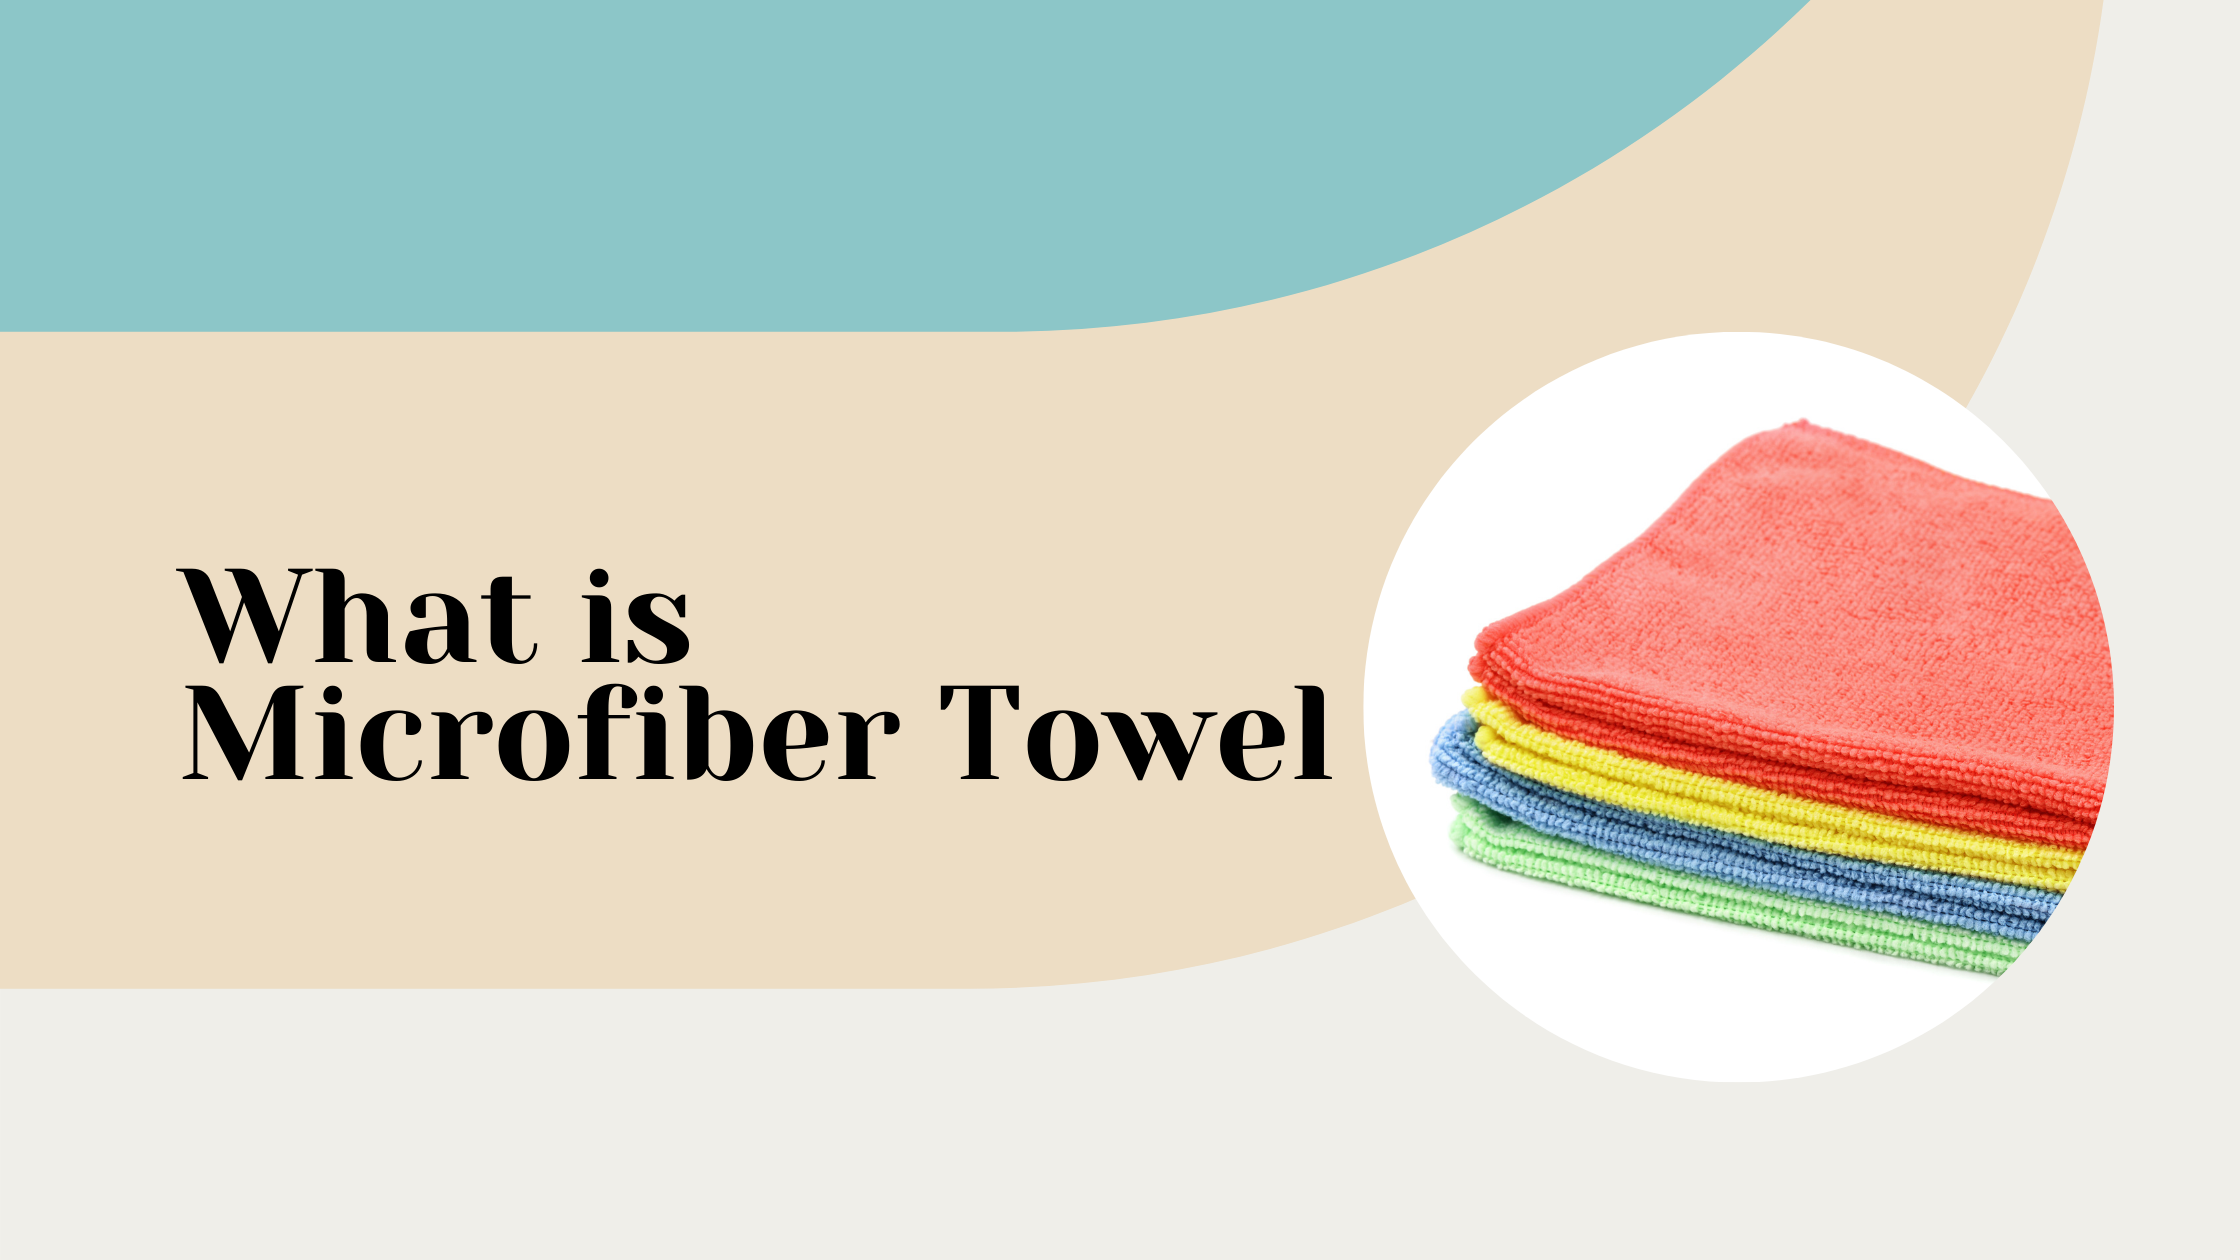 What is Microfiber Towel